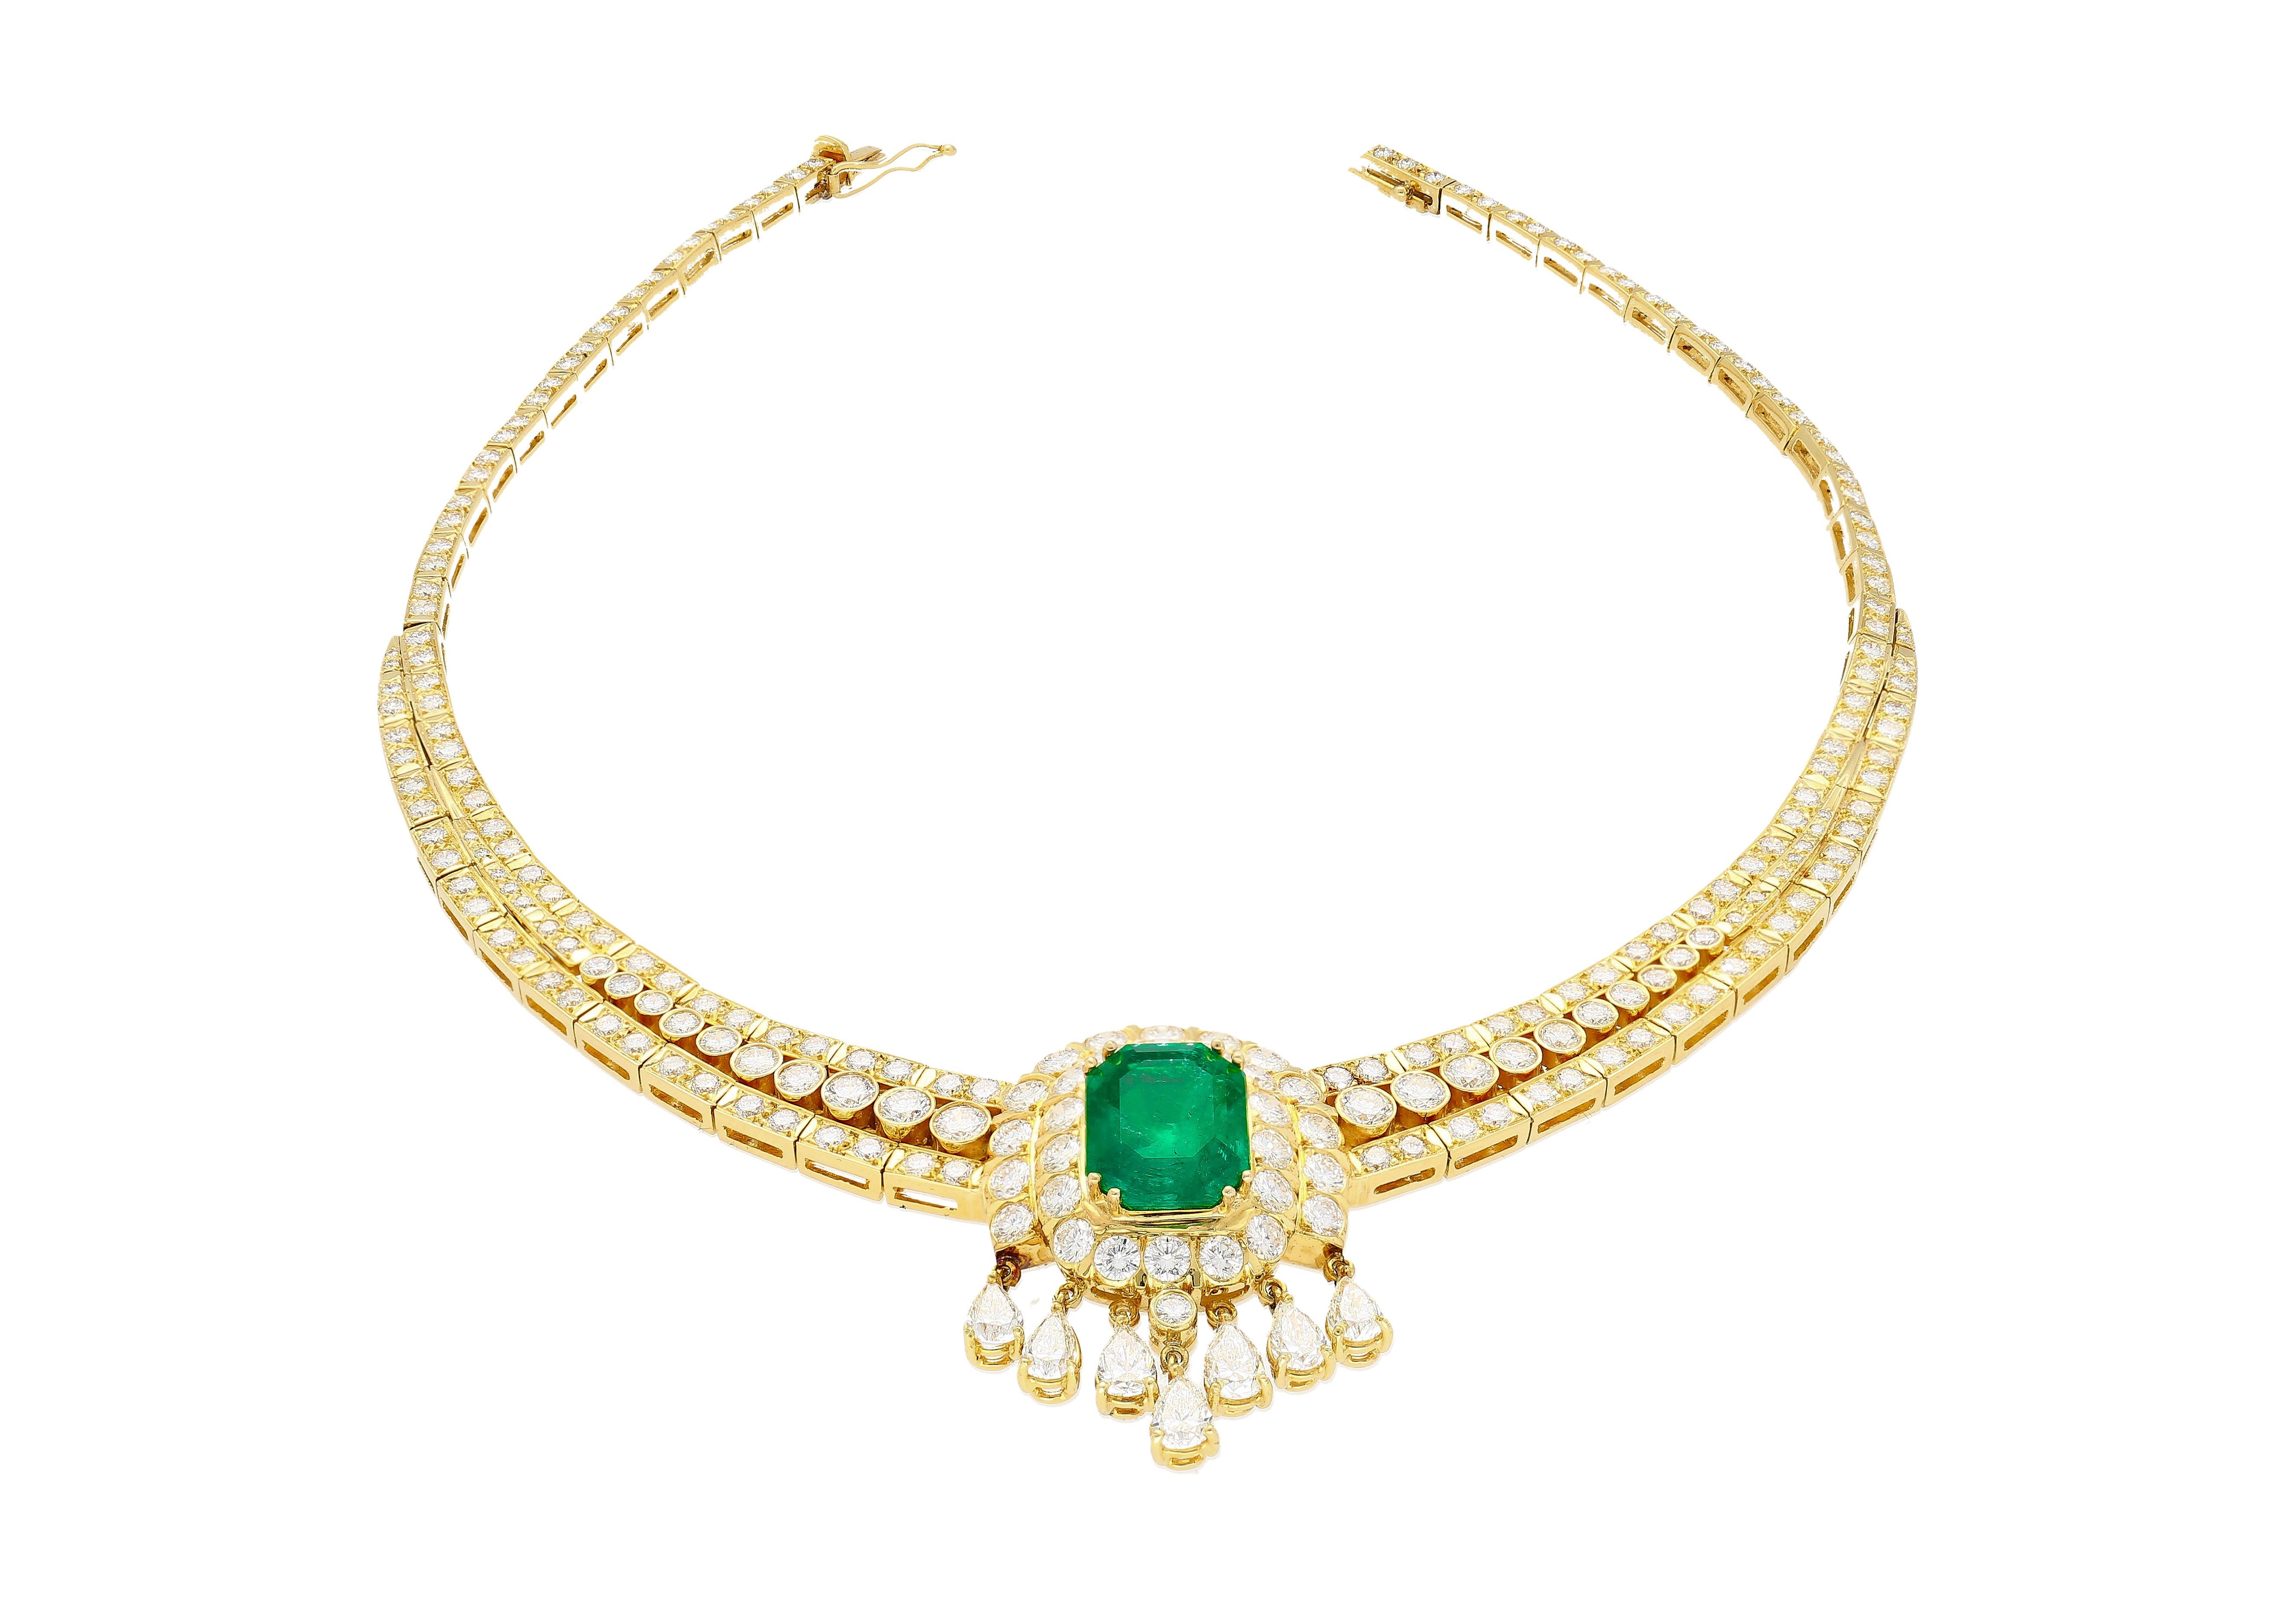 Retro 27 Carat Colombian Emerald & Diamond Chandelier Regal Choker Necklace in 18k For Sale